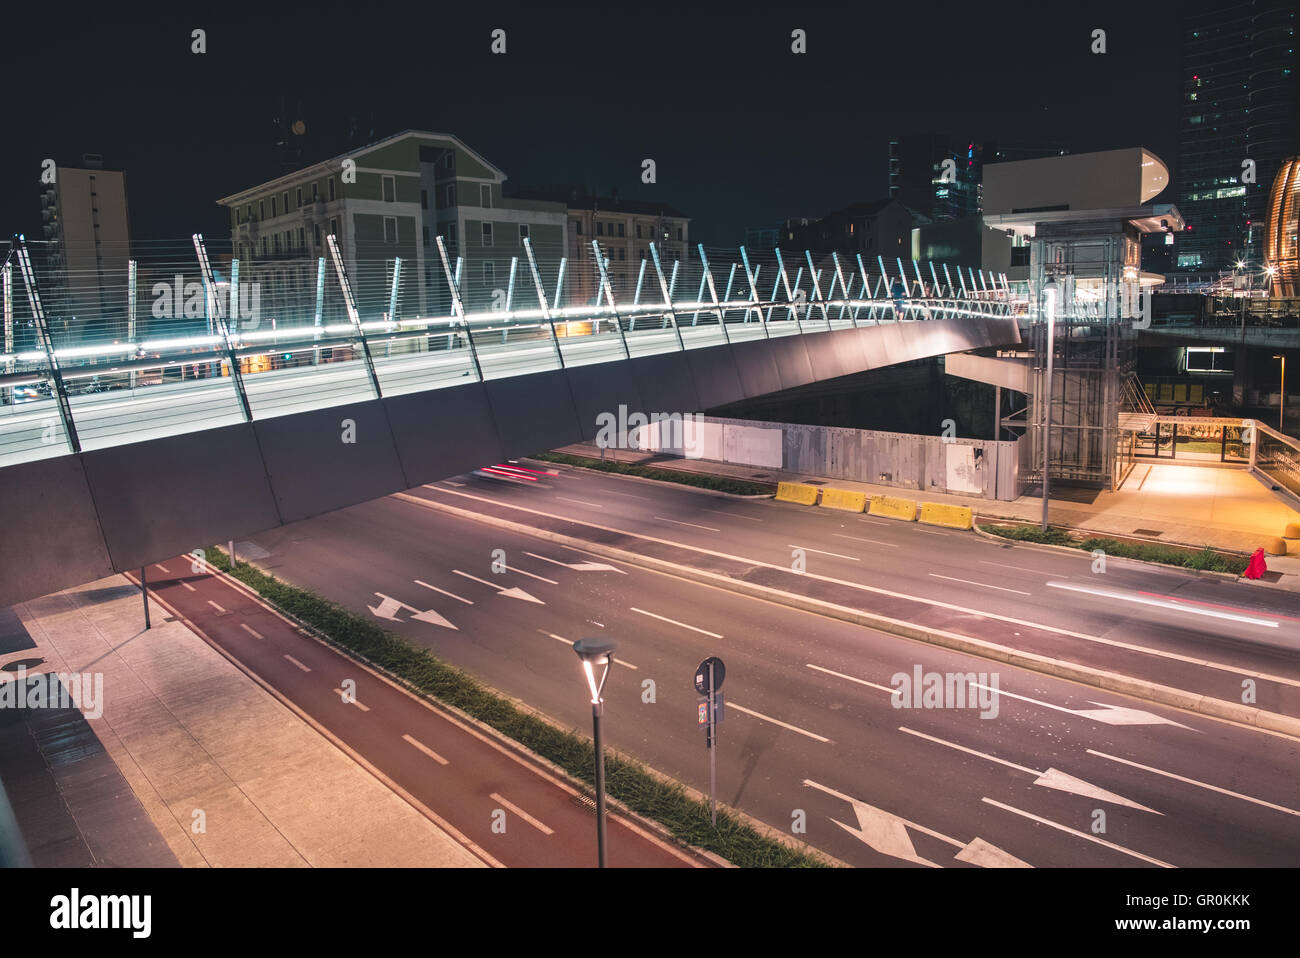 Rápido para conductores y peatones elevado en la moderna ciudad de noche Foto de stock